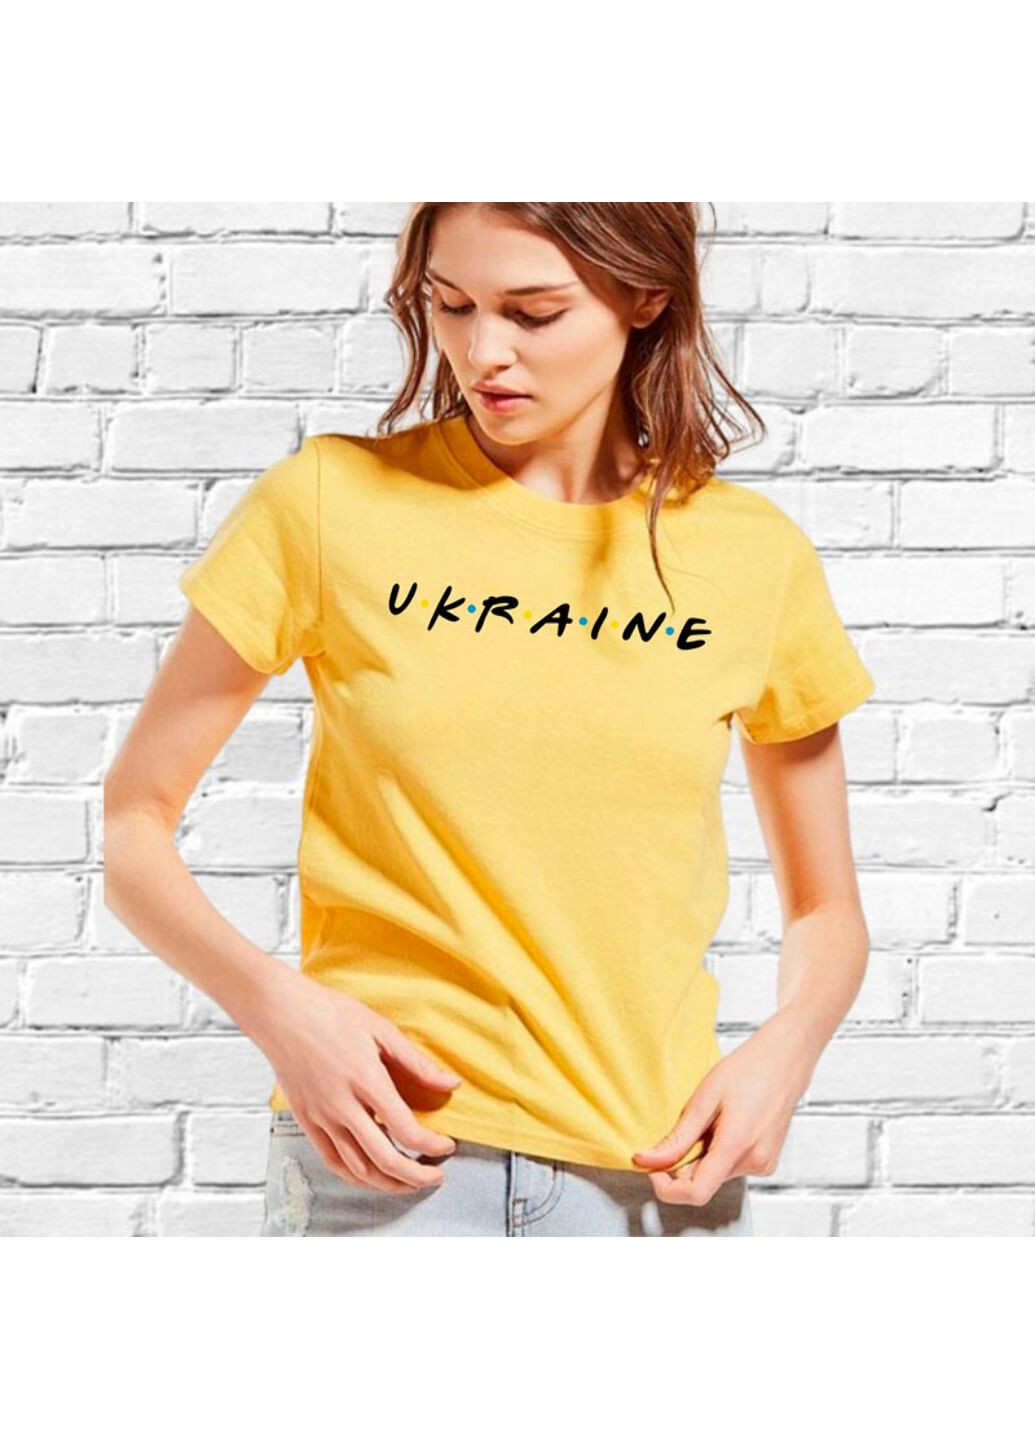 Желтая футболка женская желтая с вышивкой украина женская желтый l No Brand